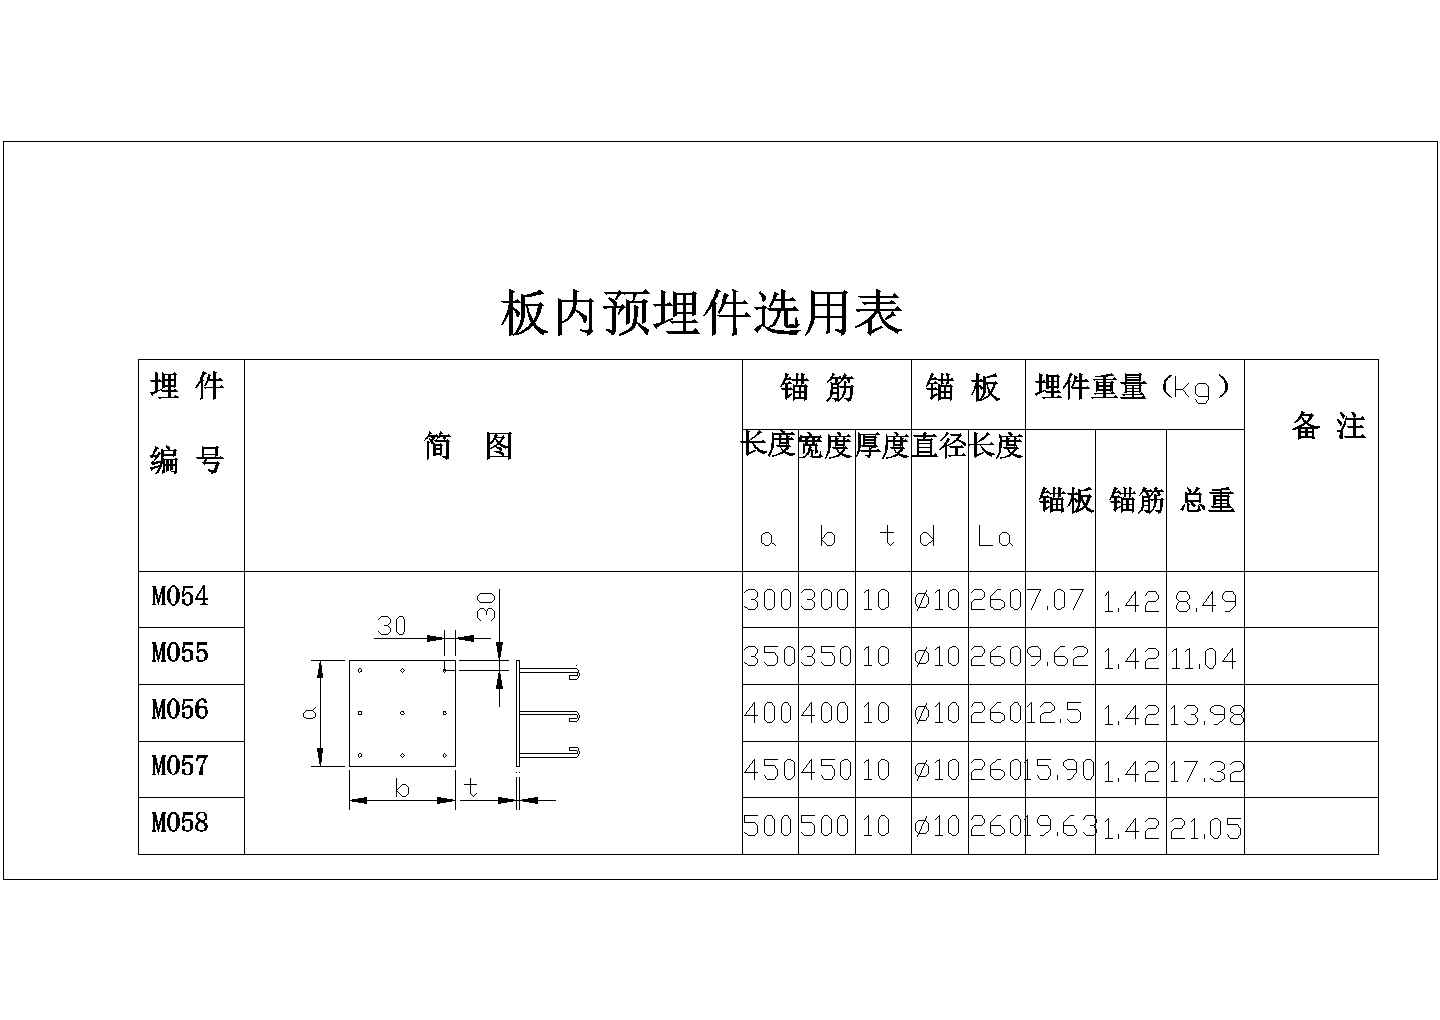 [节点详图]某板内预埋件选用表、扁钢预埋件、角钢预埋件选用表（M054-M076）